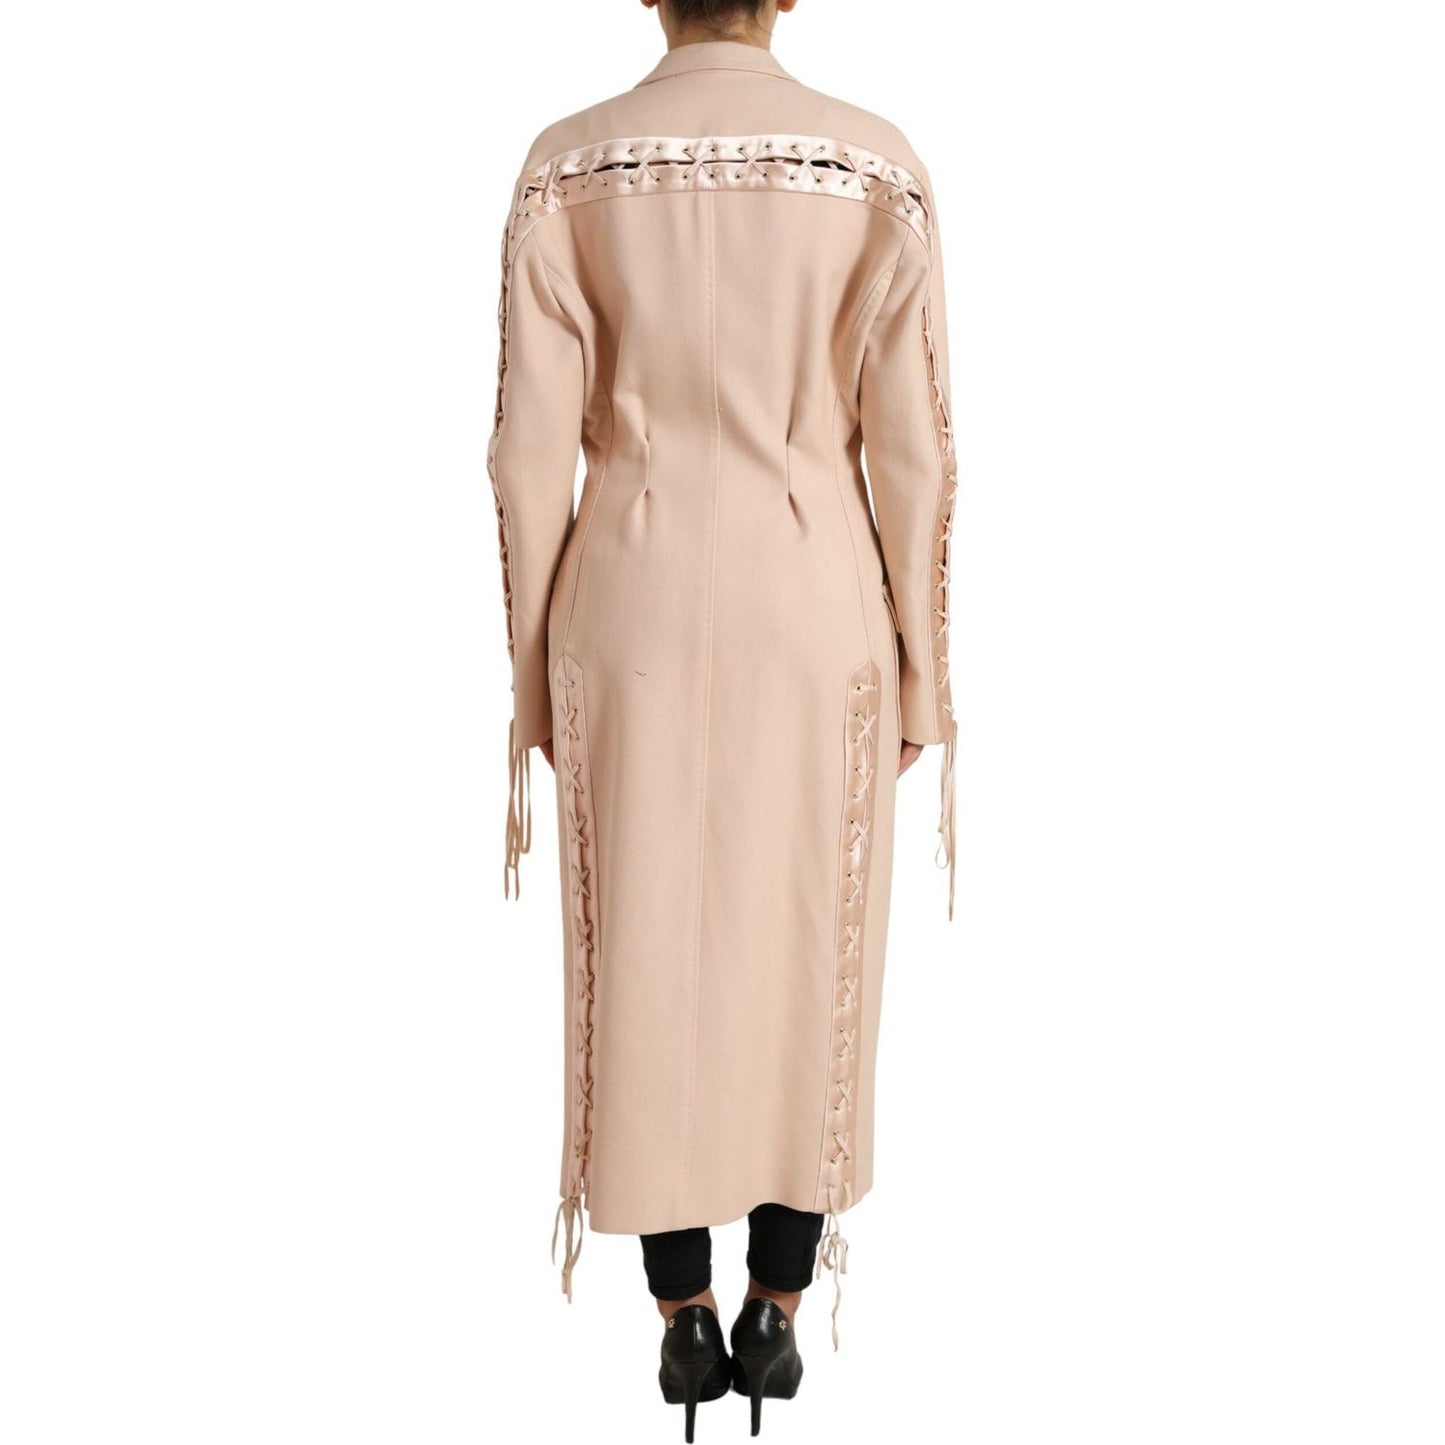 Dolce & Gabbana Elegant Beige Single-Breasted Trench Coat beige-cotton-single-breasted-long-coat-jacket 465A9167-BG-scaled-e0be01c6-0ea.jpg